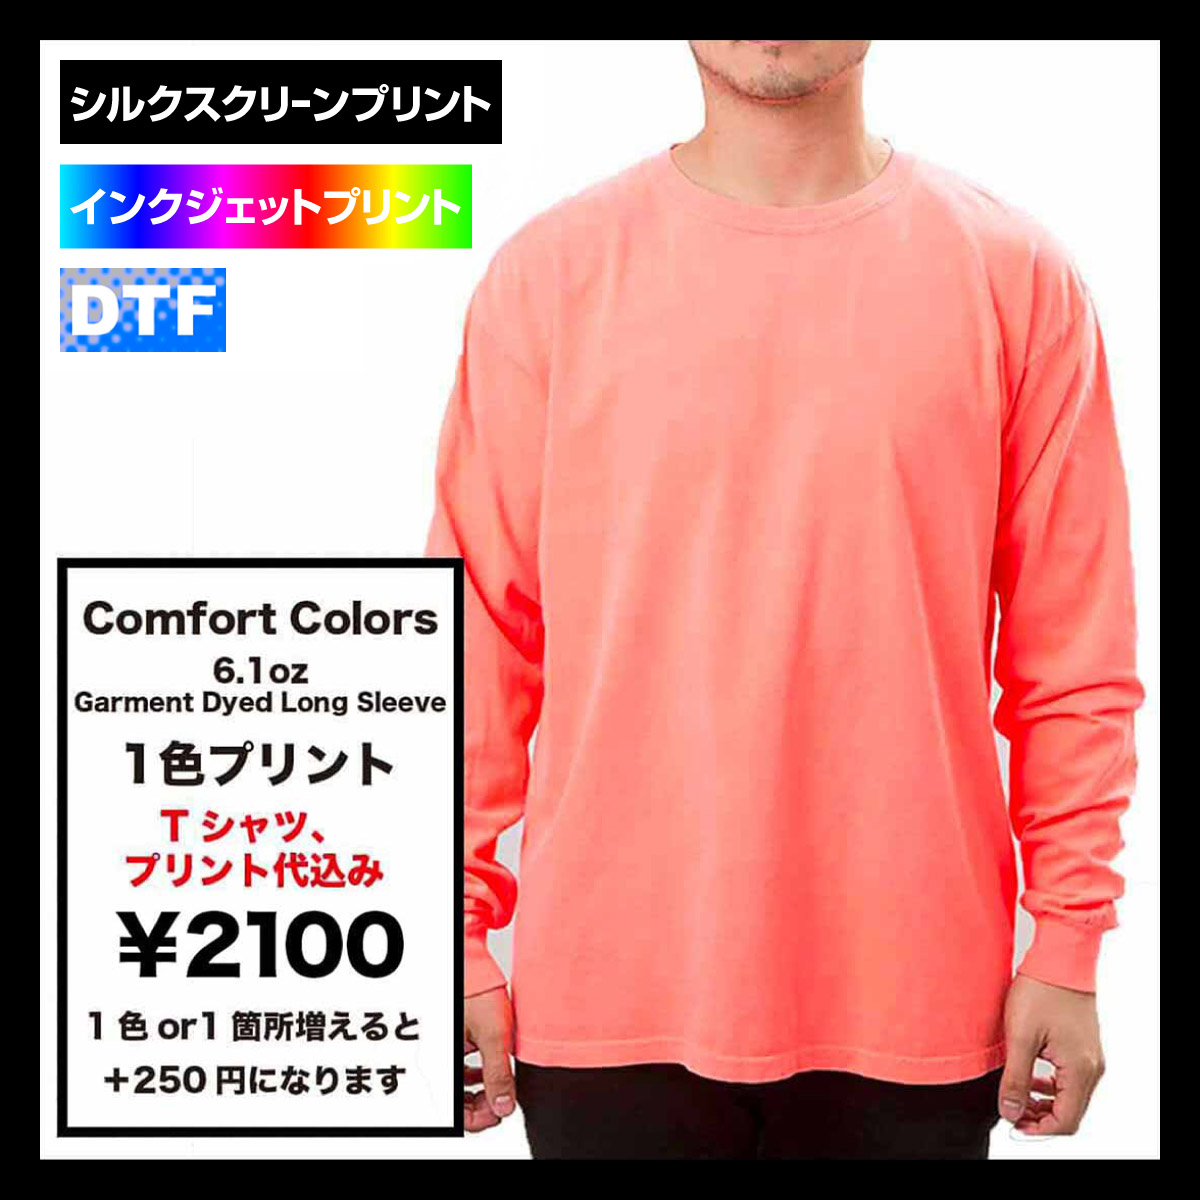 Comfort Colors コンフォートカラーズ 6.1 oz ガーメントダイ長袖Tシャツ (品番CC6014)